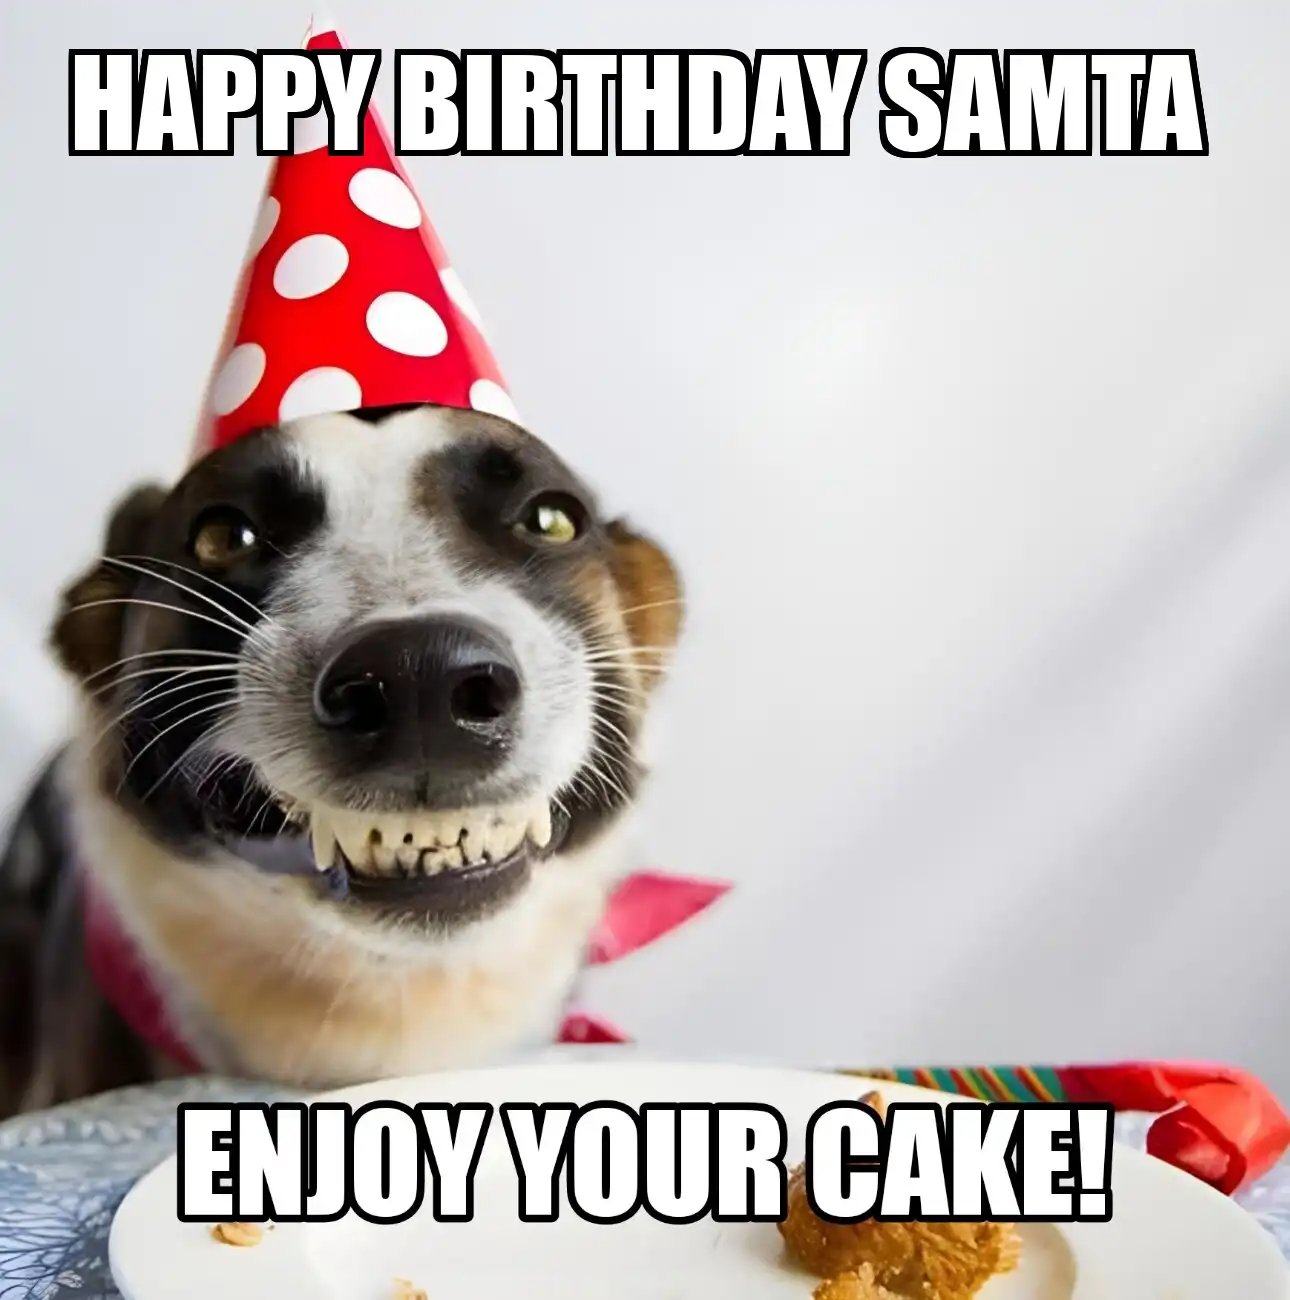 Happy Birthday Samta Enjoy Your Cake Dog Meme